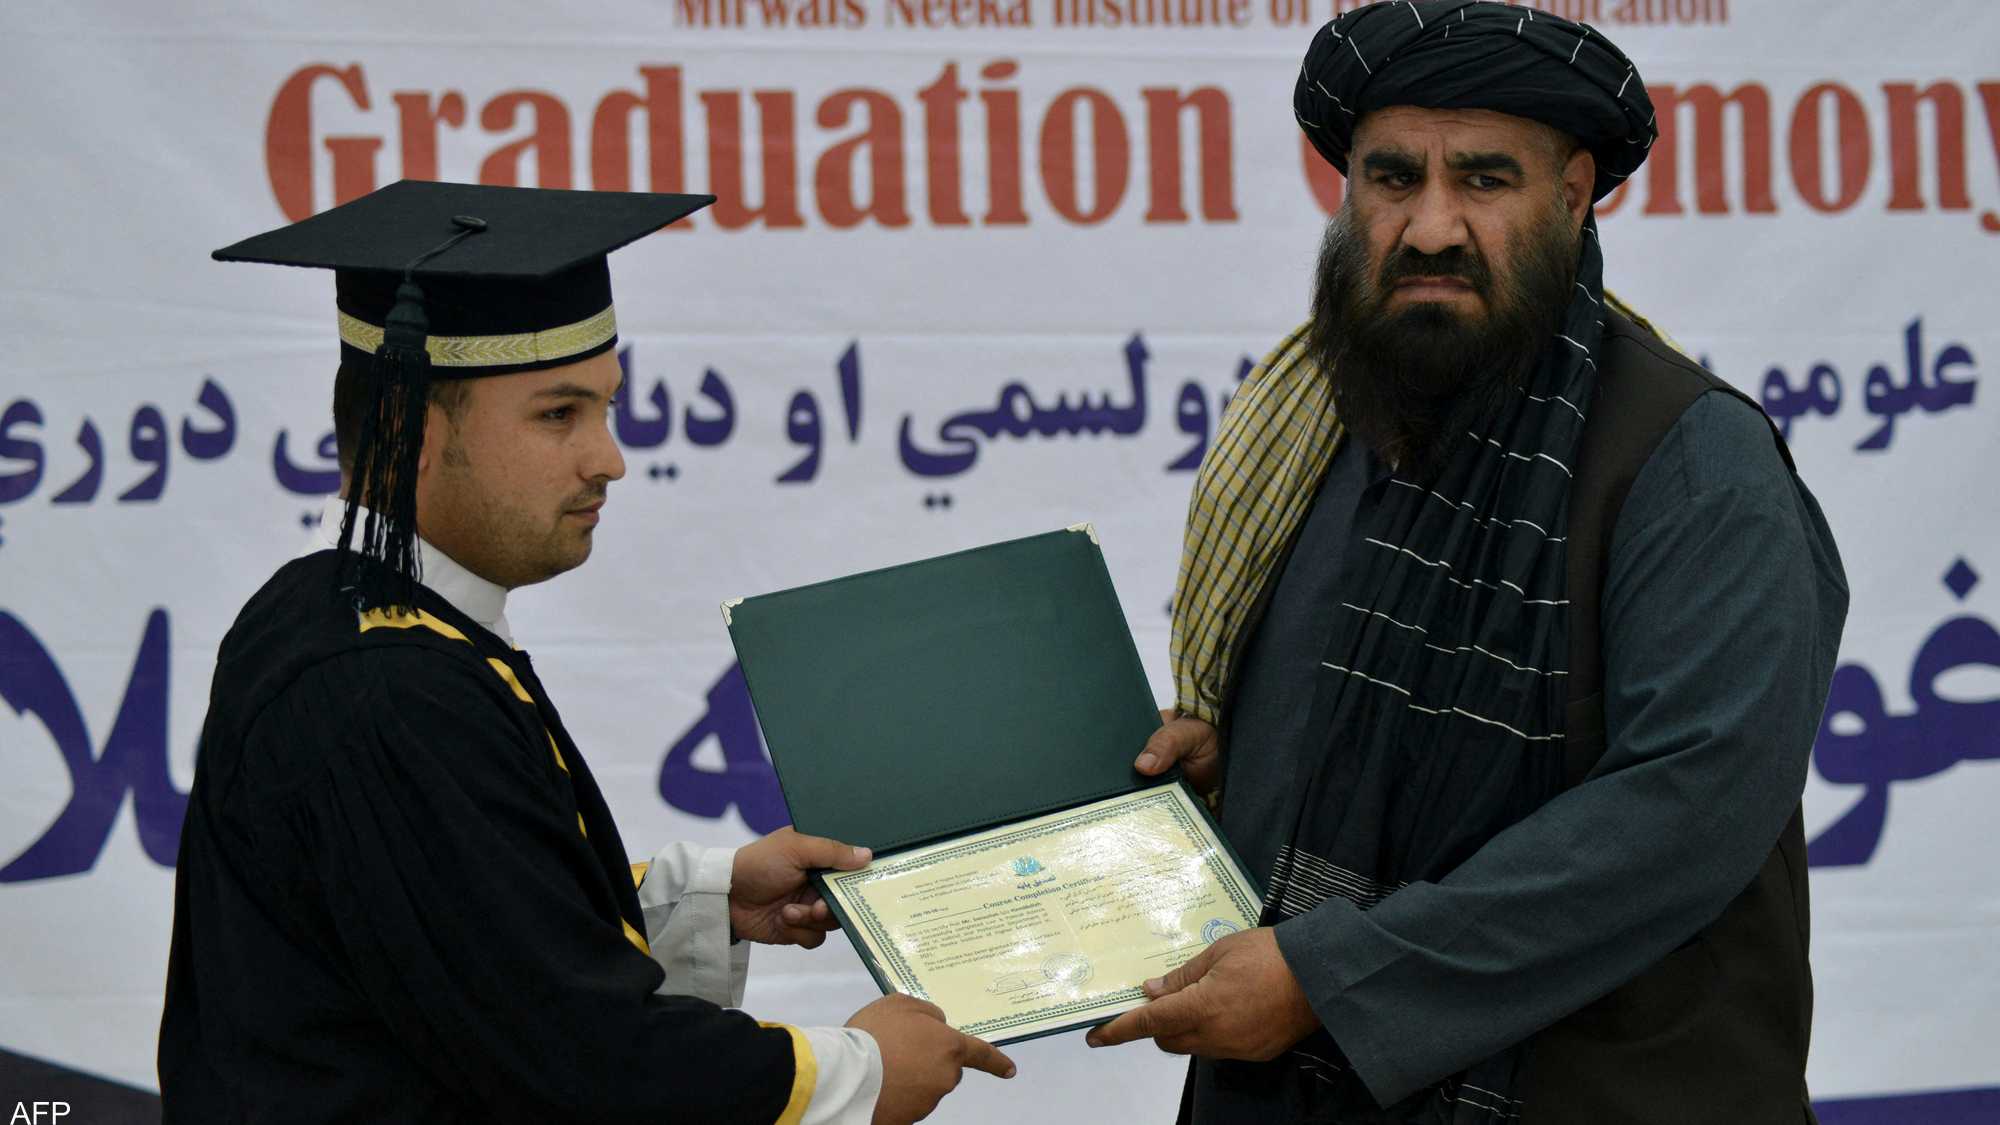 1 1482953 - الفتيات في المقدمة .. شاهد أول تخرج جامعي للطلاب تنظمه حركة طالبان بعد السيطرة على الحكم